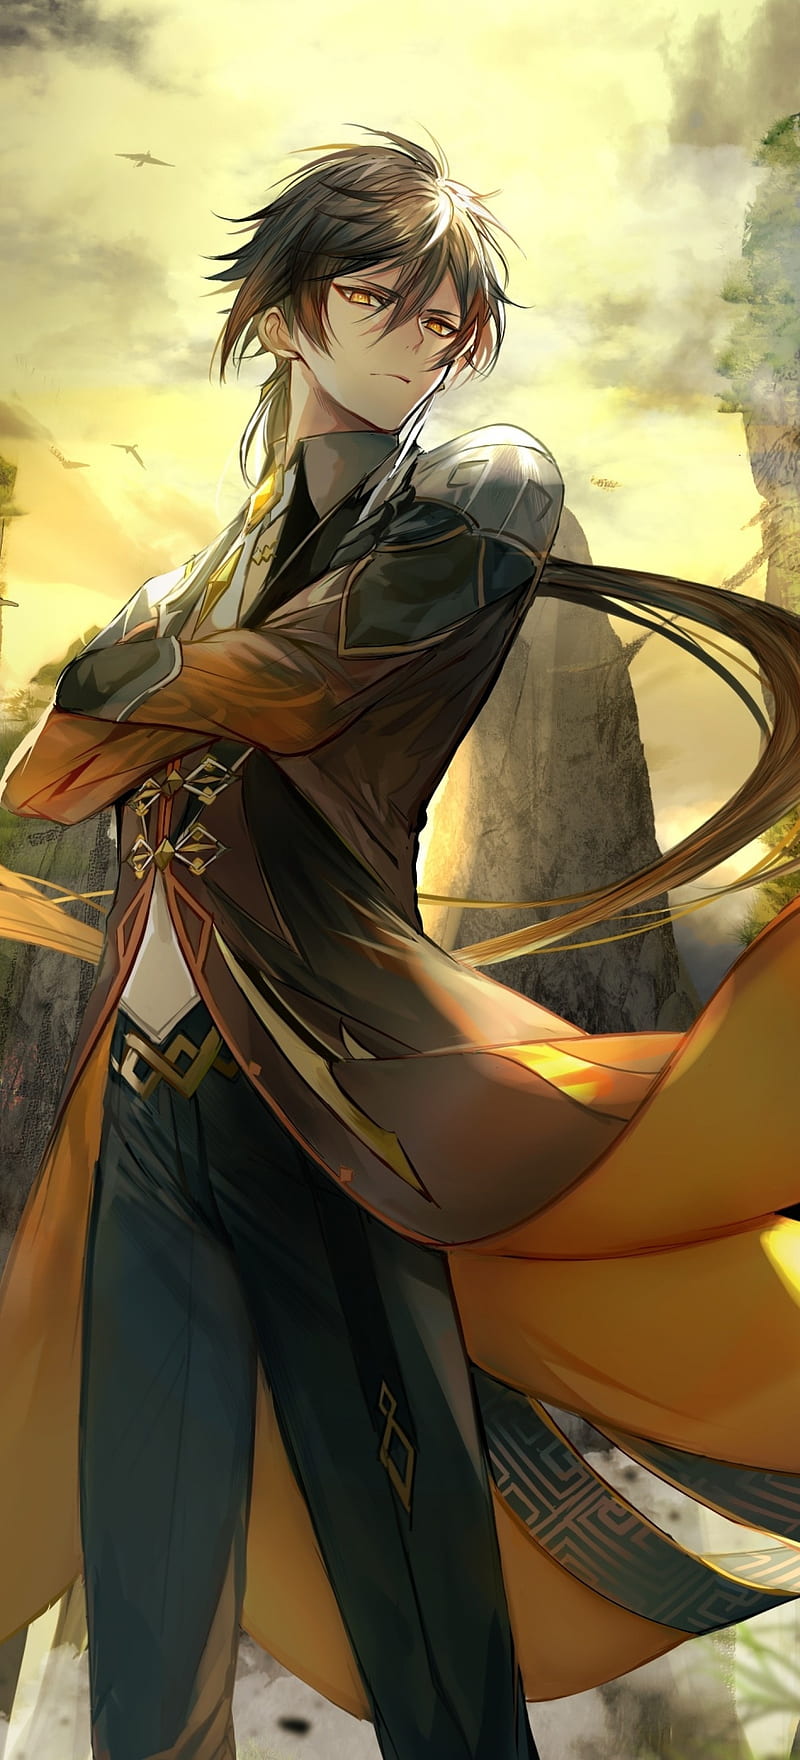 Zhongli: Zhongli - một nhân vật đầy bí ẩn và cũng là một vị thần trong thế giới của Genshin Impact. Hãy cùng xem hình ảnh liên quan đến Zhongli để tìm hiểu thêm về anh và chứng kiến những trận chiến kịch tính.